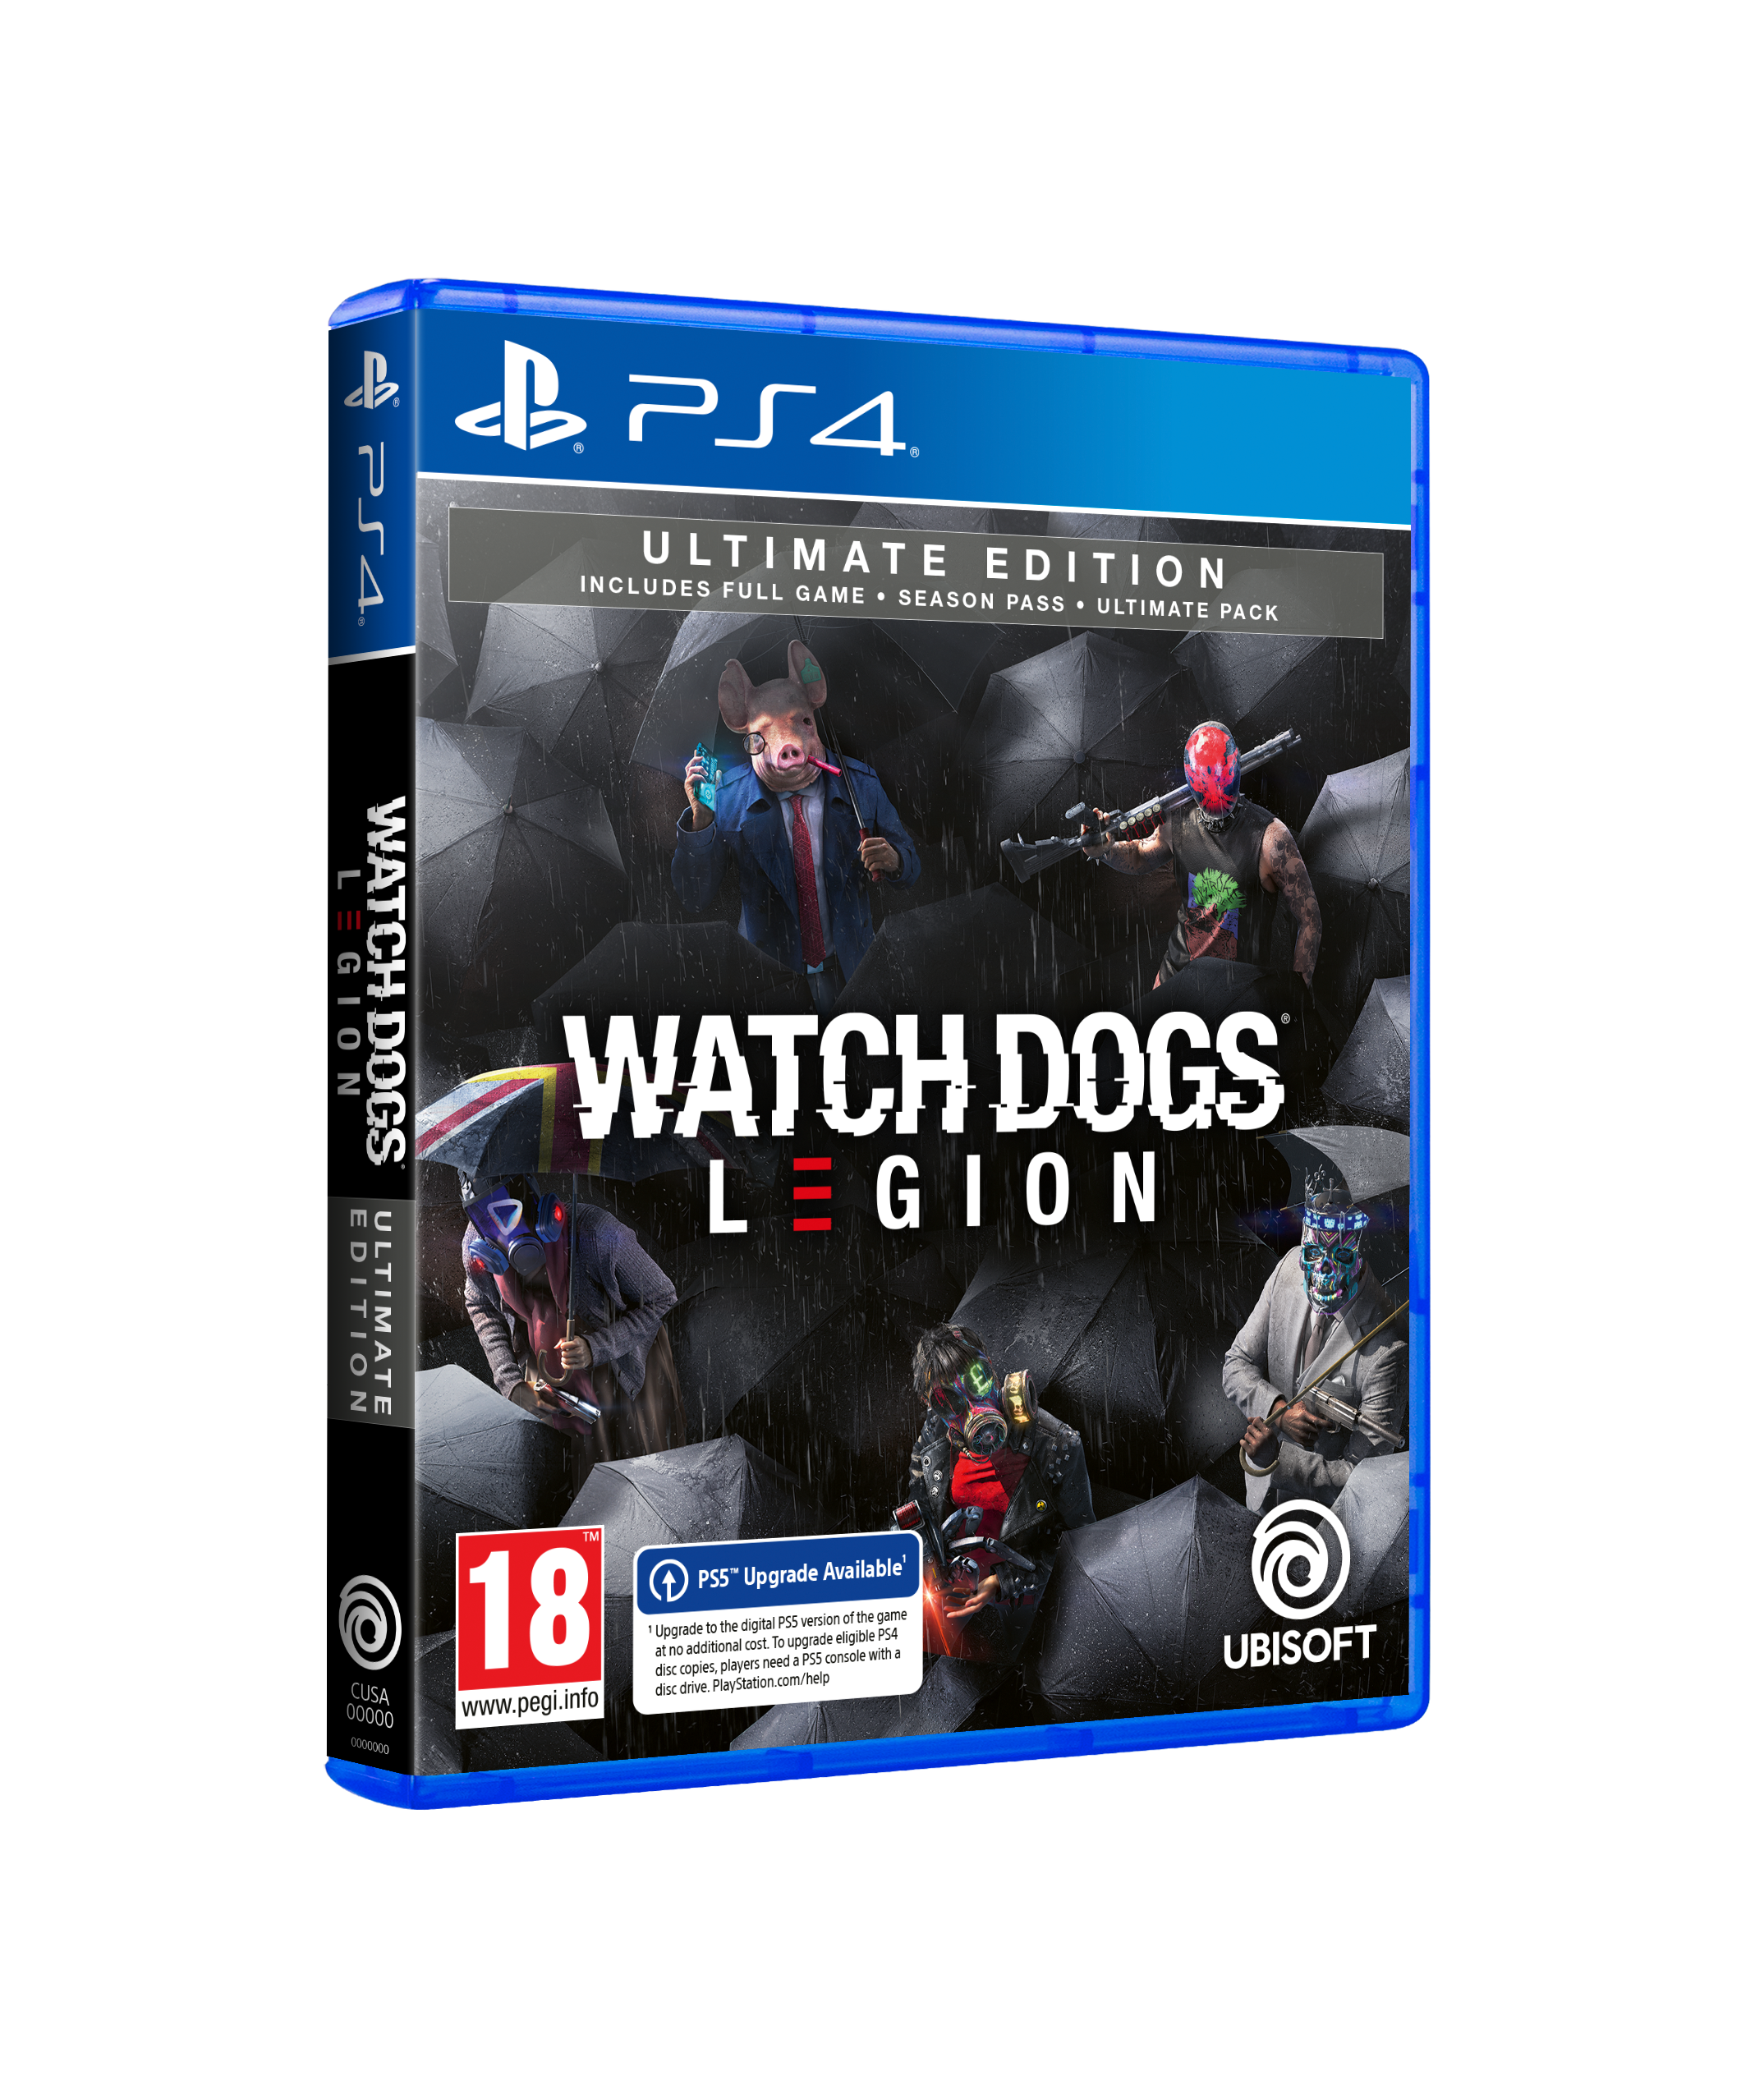 Watch Dogs Legion poderá ser jogado de graça no PC, PS4 e PS5